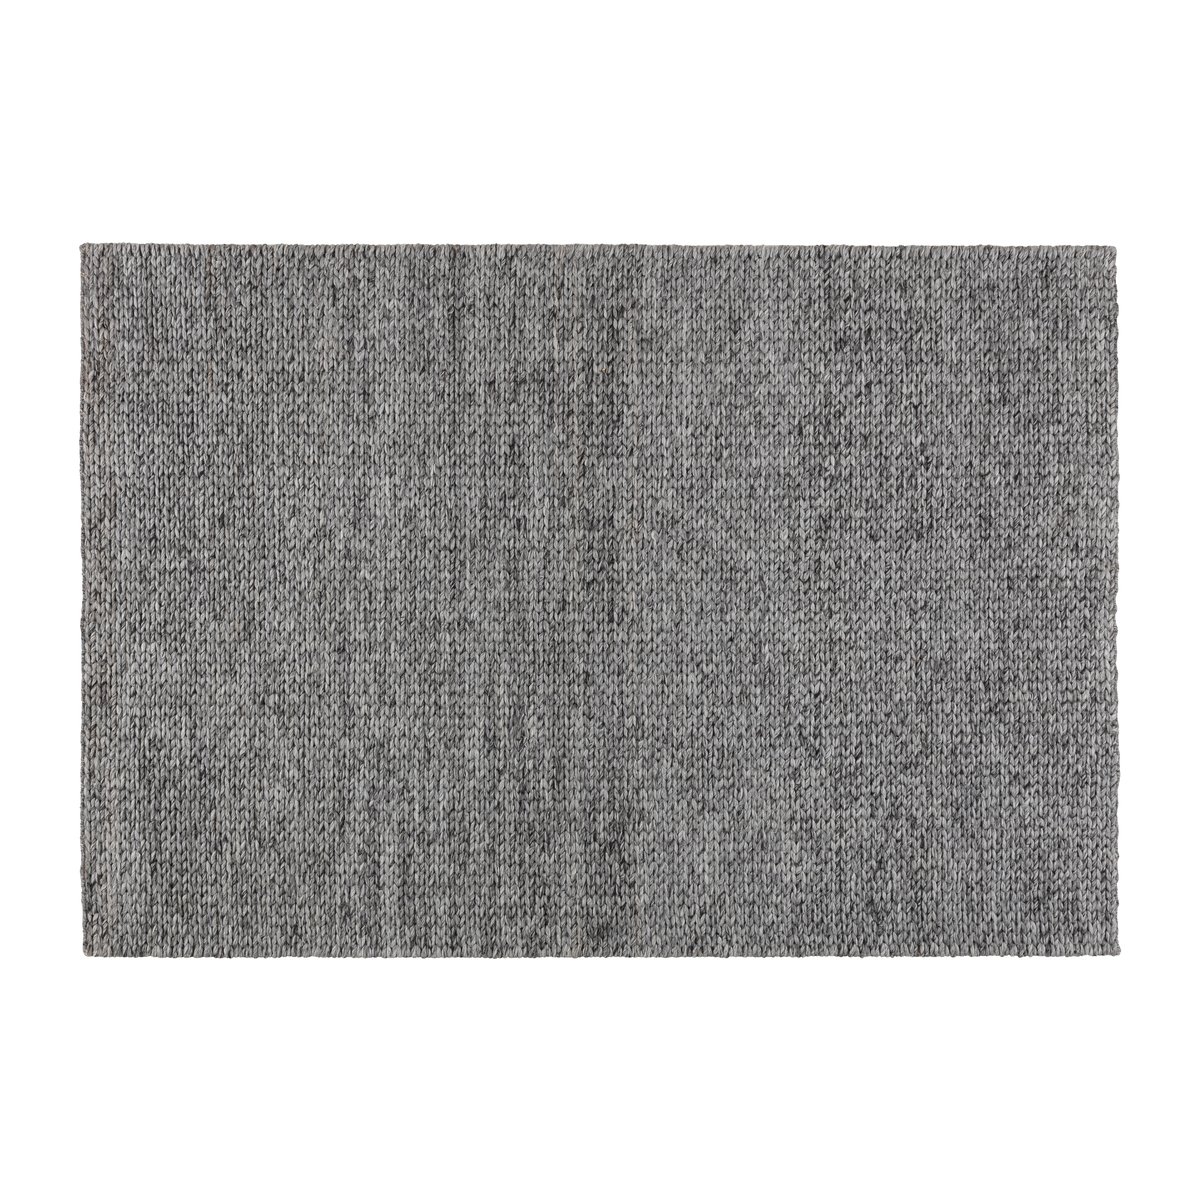 Bilde av Scandi Living Braided ullteppe mørk grå 200x300 cm